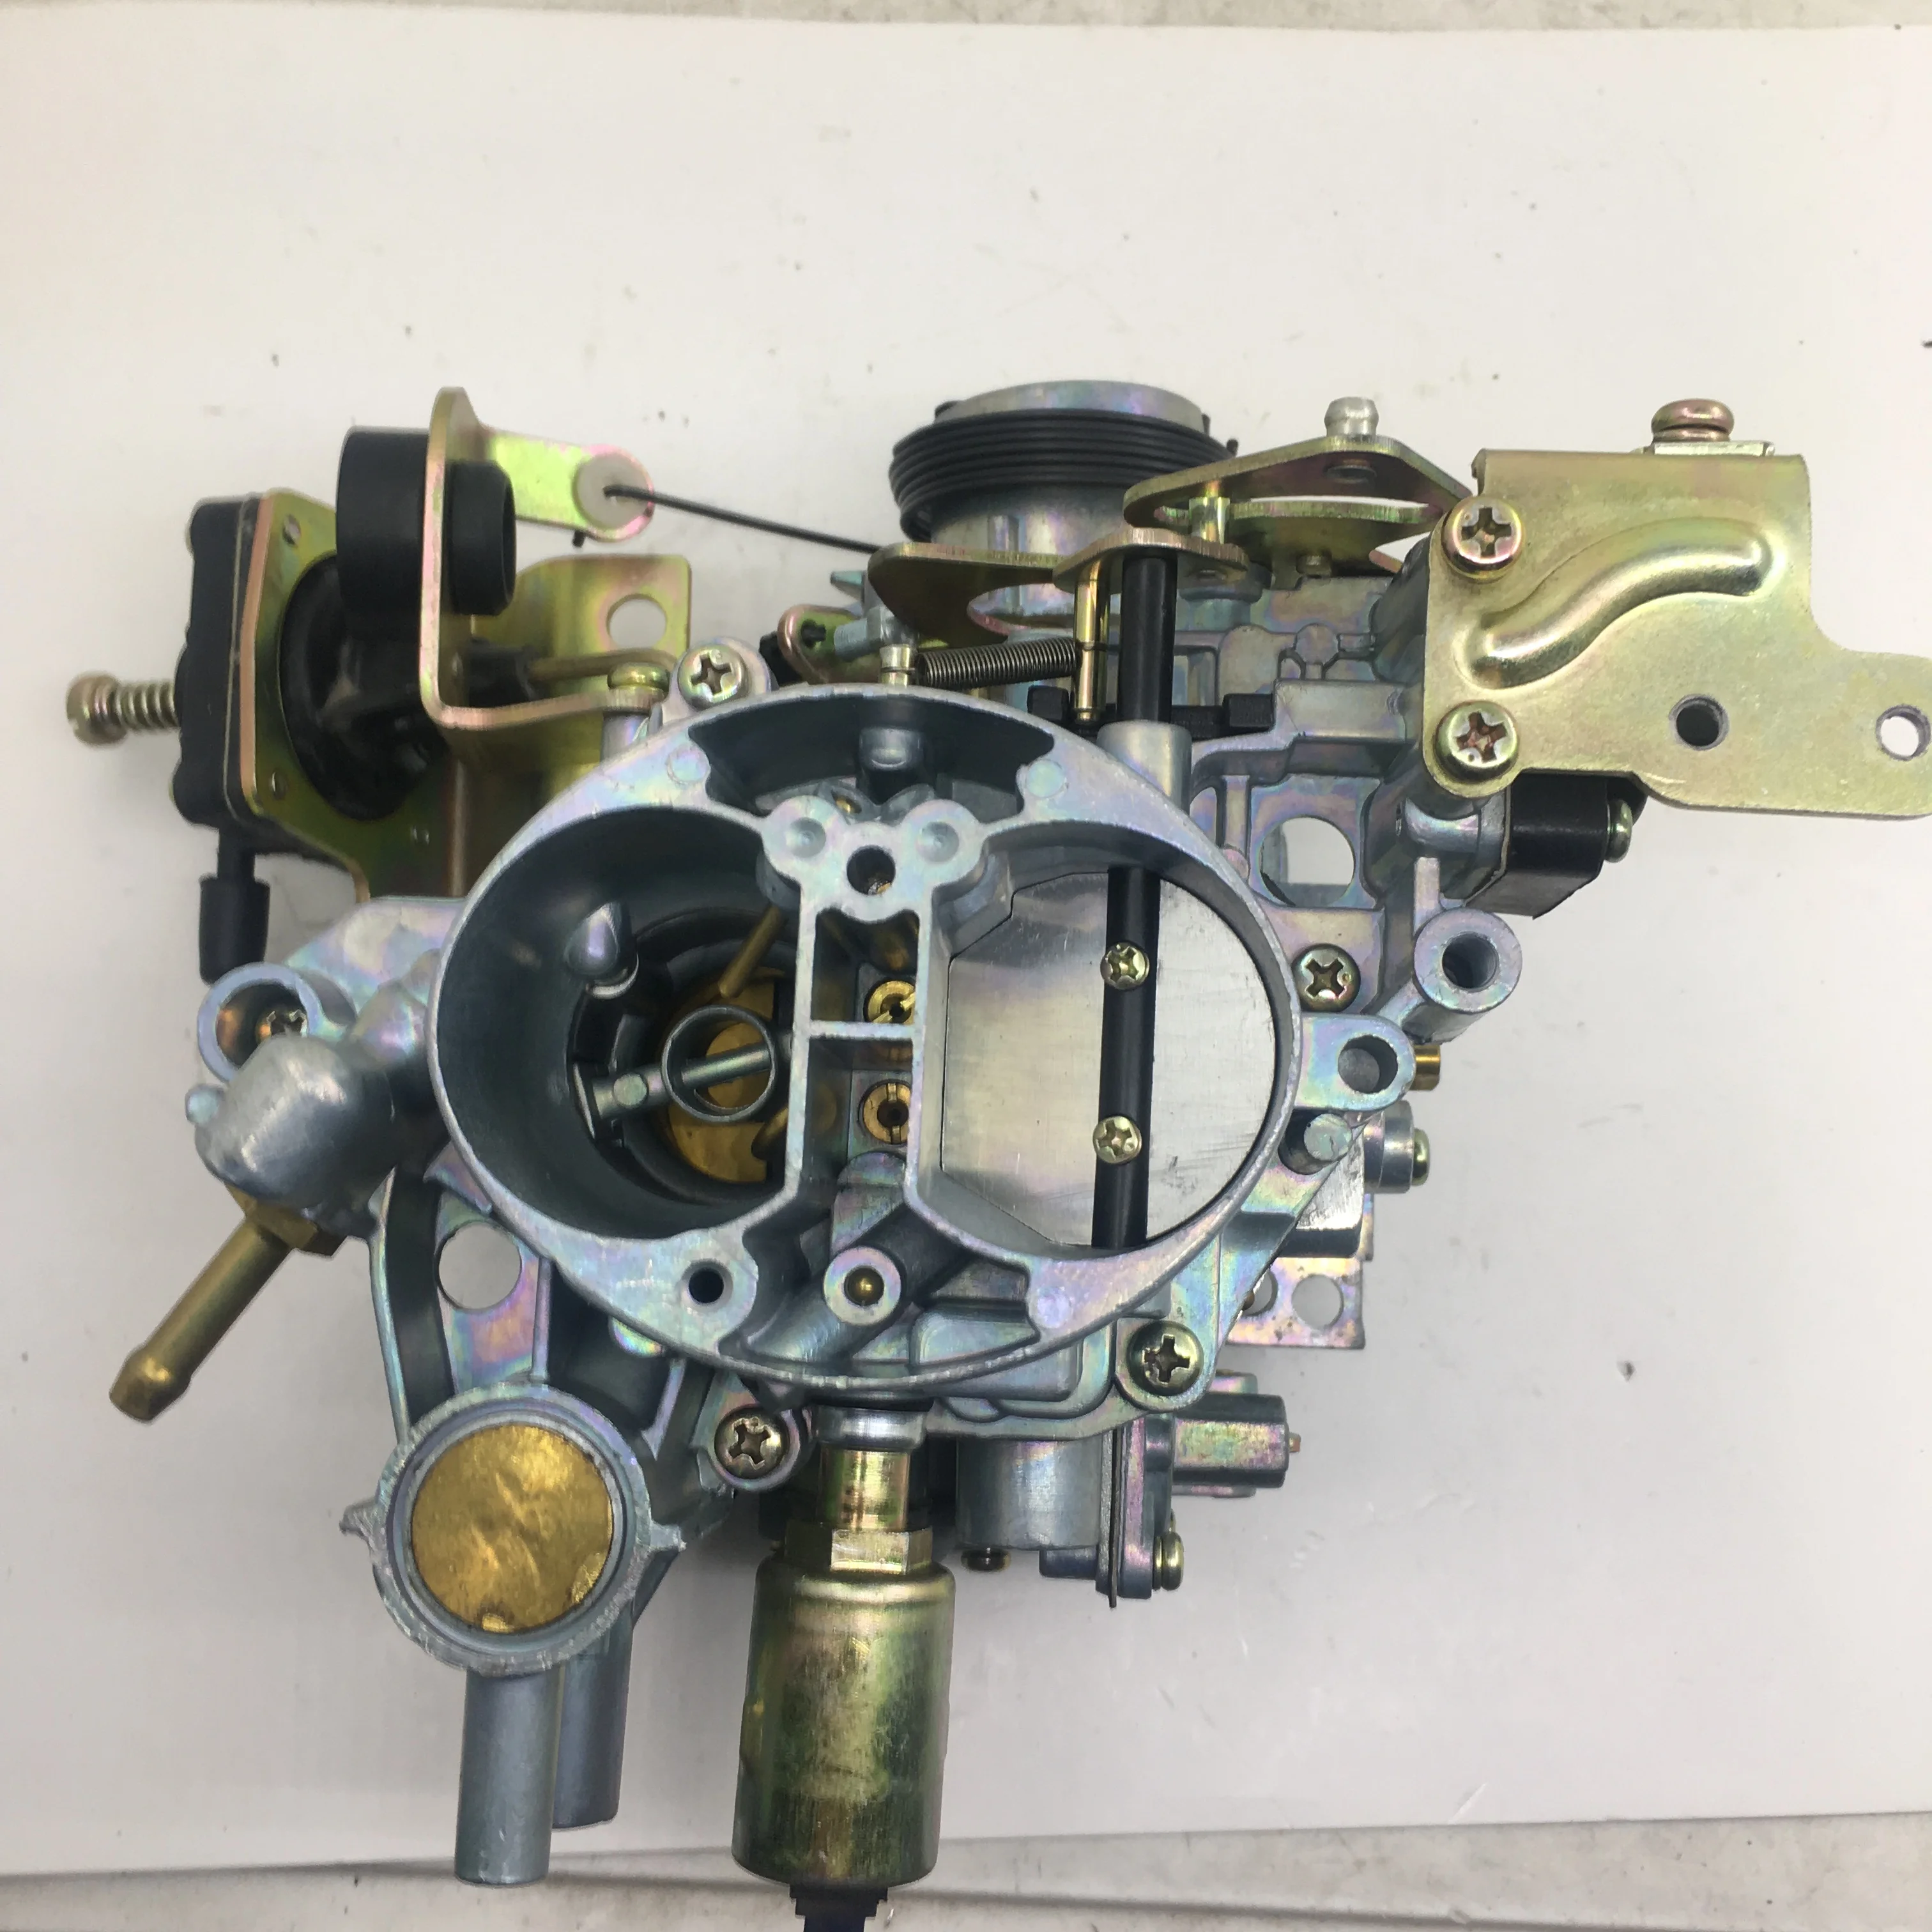 SherryBerg carburettor vergaser carburetor for peugeot 405 solex carb NO.9422212900 carby classic 1987-1995 carburettor OEM item